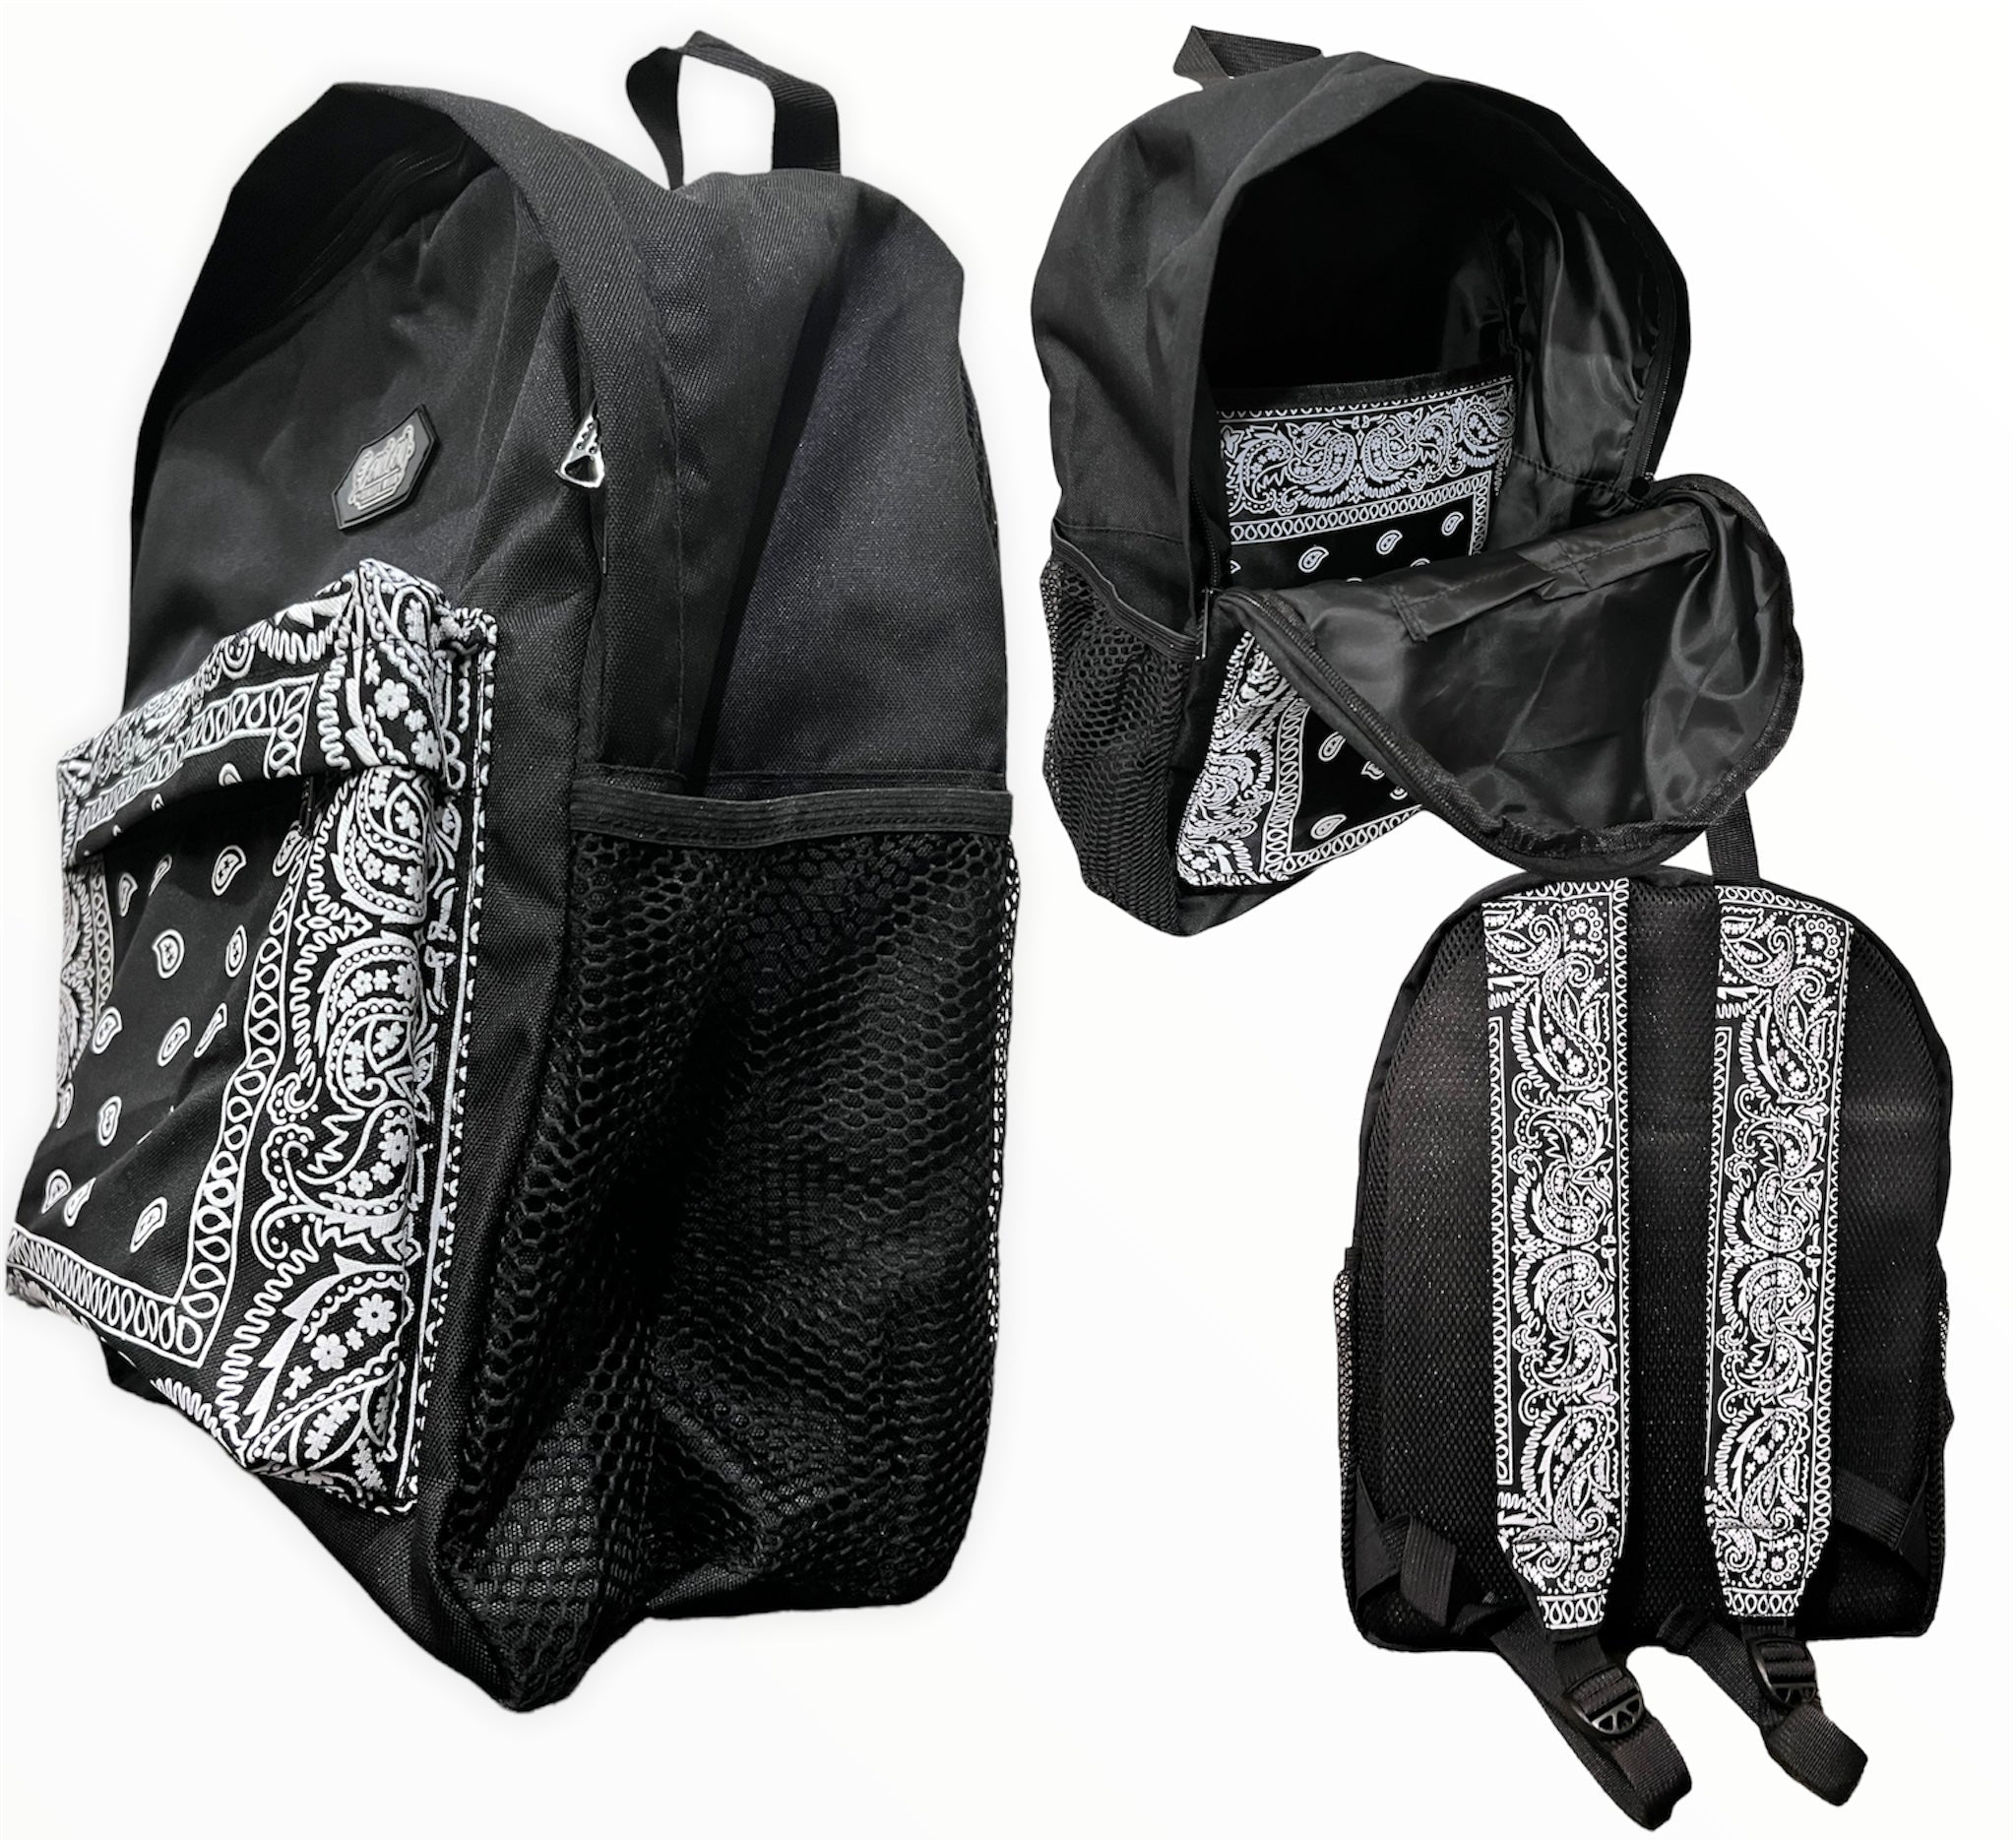 Bandana backpack